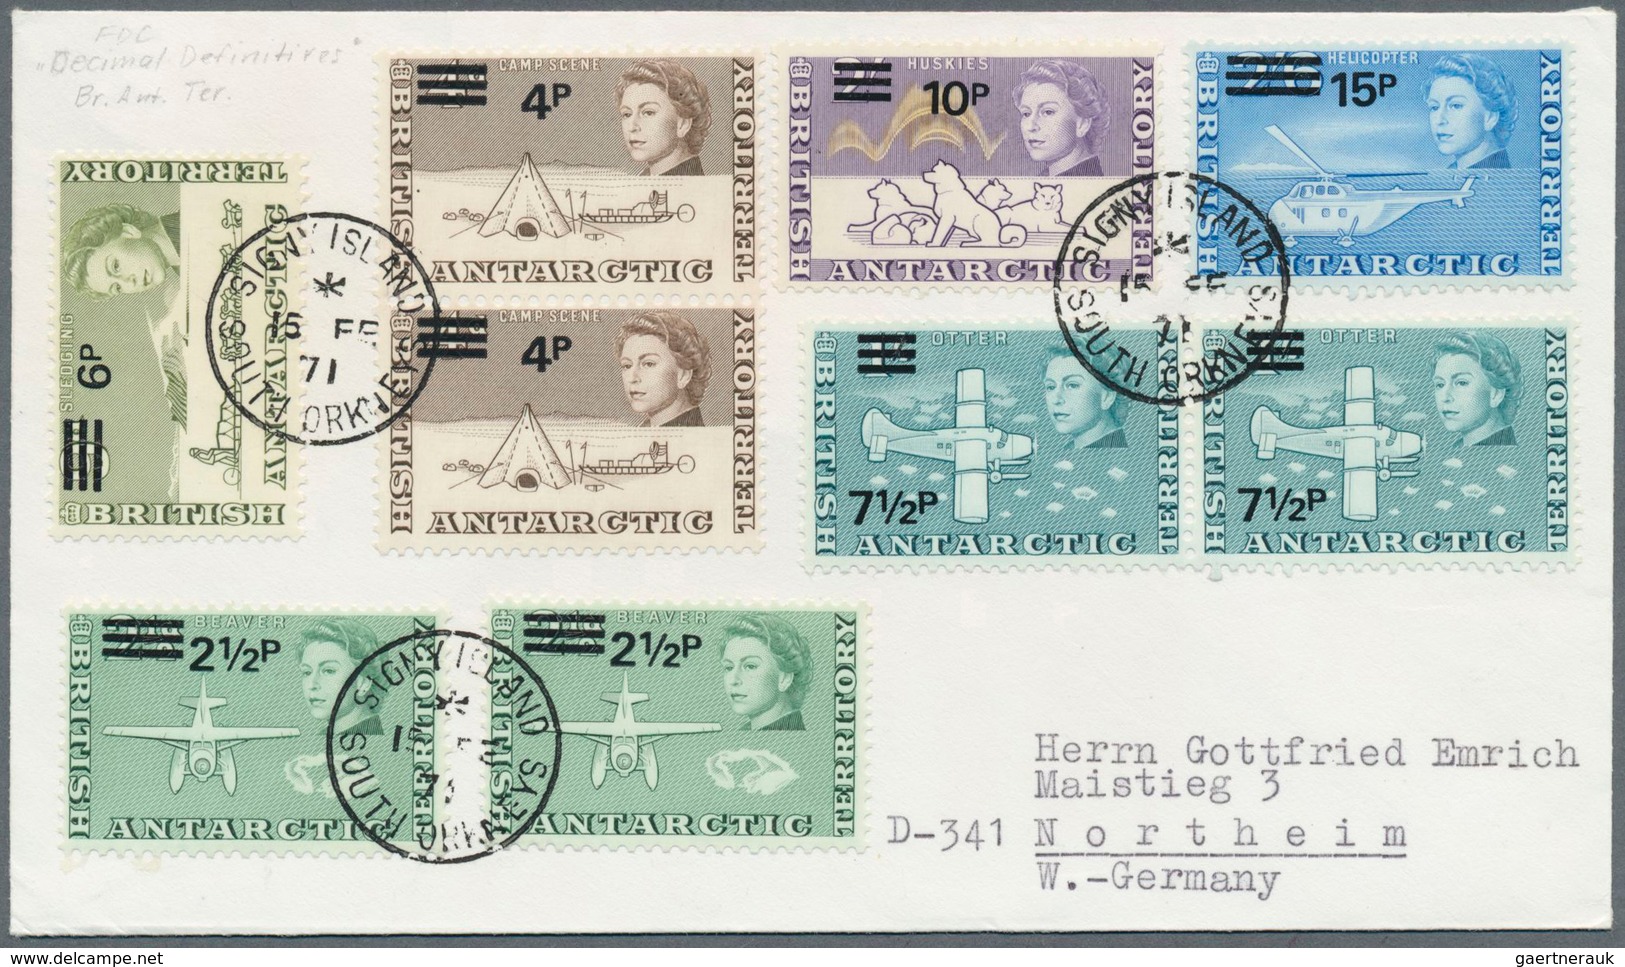 22321 Britische Gebiete in der Antarktis: 1942/2010, BAAT/FALKLANDS/DEPENDENCIES, collection of apprx. 1.0